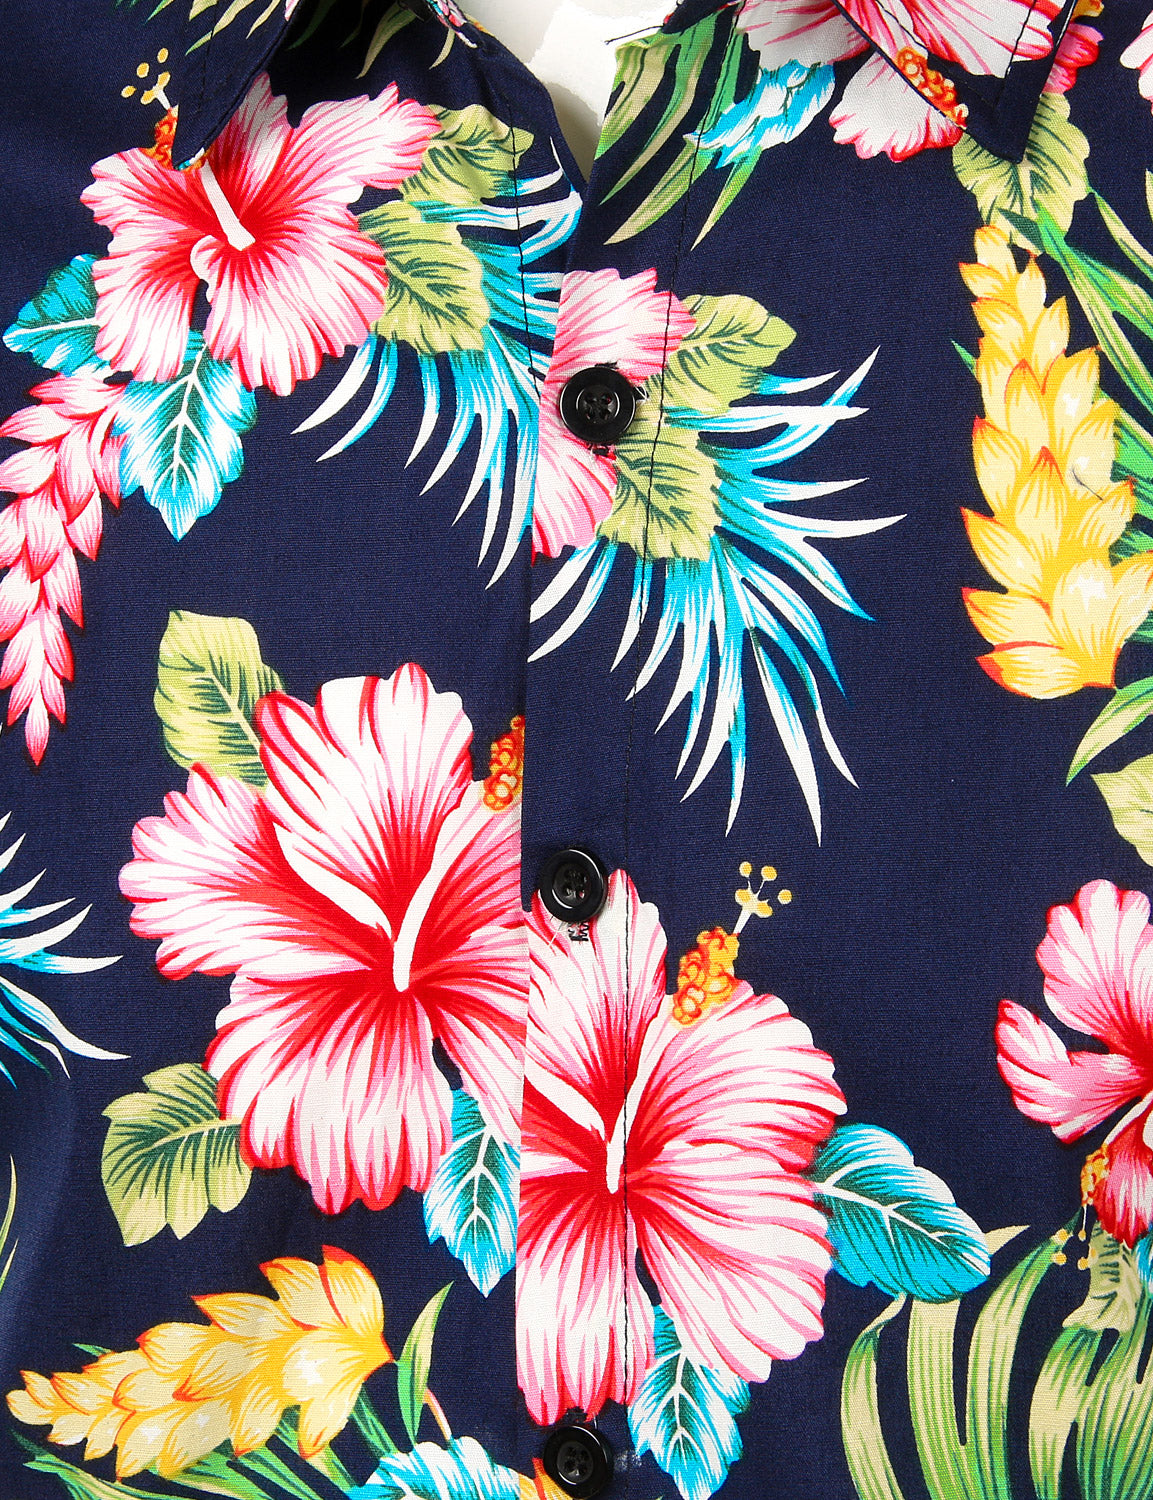 JOGAL Men's Flower Short Sleeve Button Down Hawaiian Shirt WhiteLotus / L